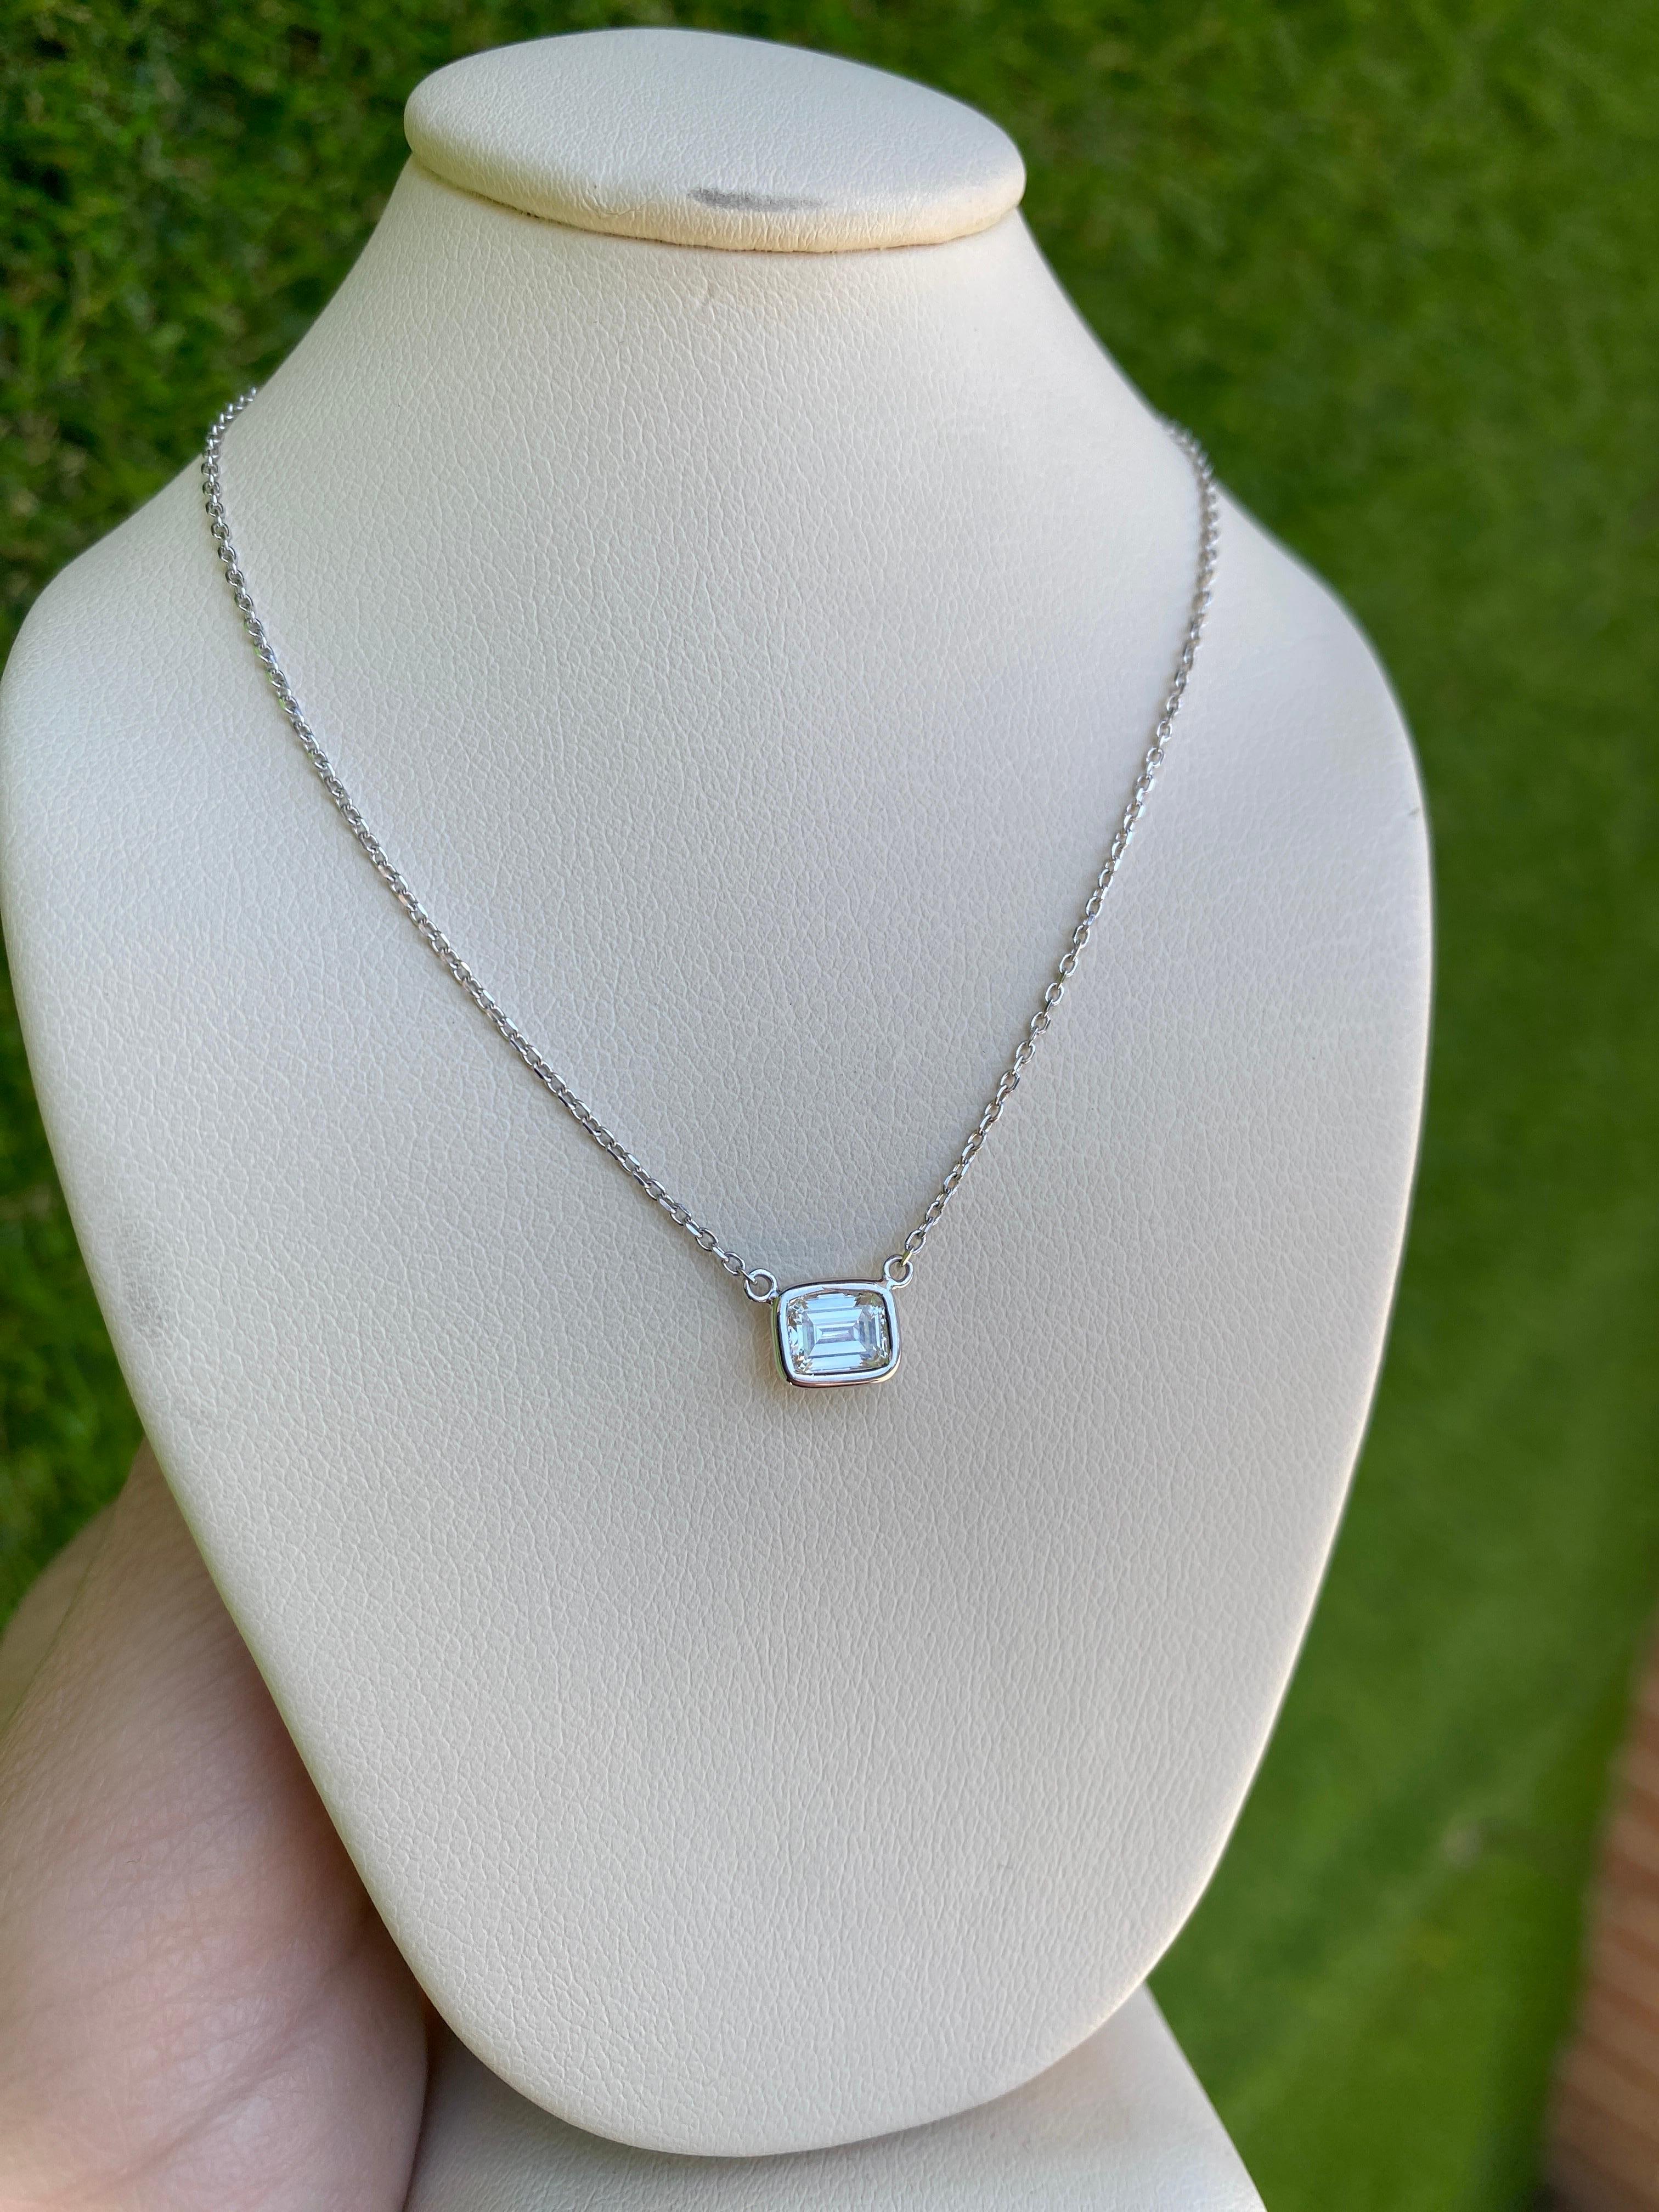 0.44 Carat Natural Emerald Cut Bezel Set Diamond Pendant Necklace 14k White Gold For Sale 4